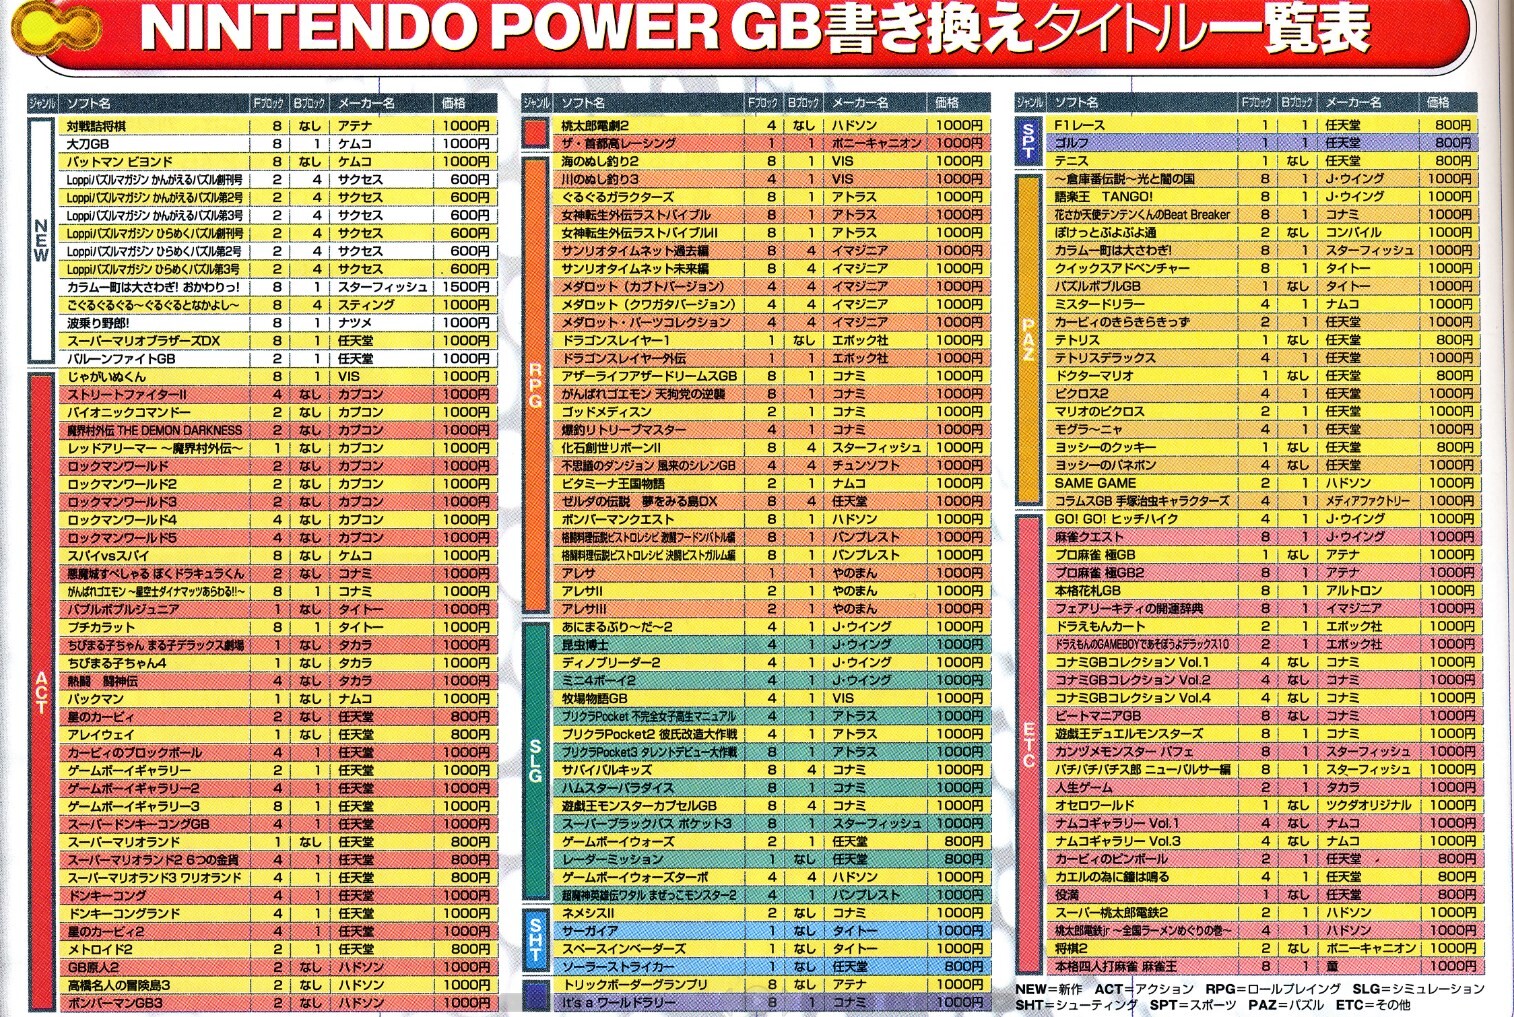 SNES/Gameboy Nintendo Power Lawson Rewriting Unit